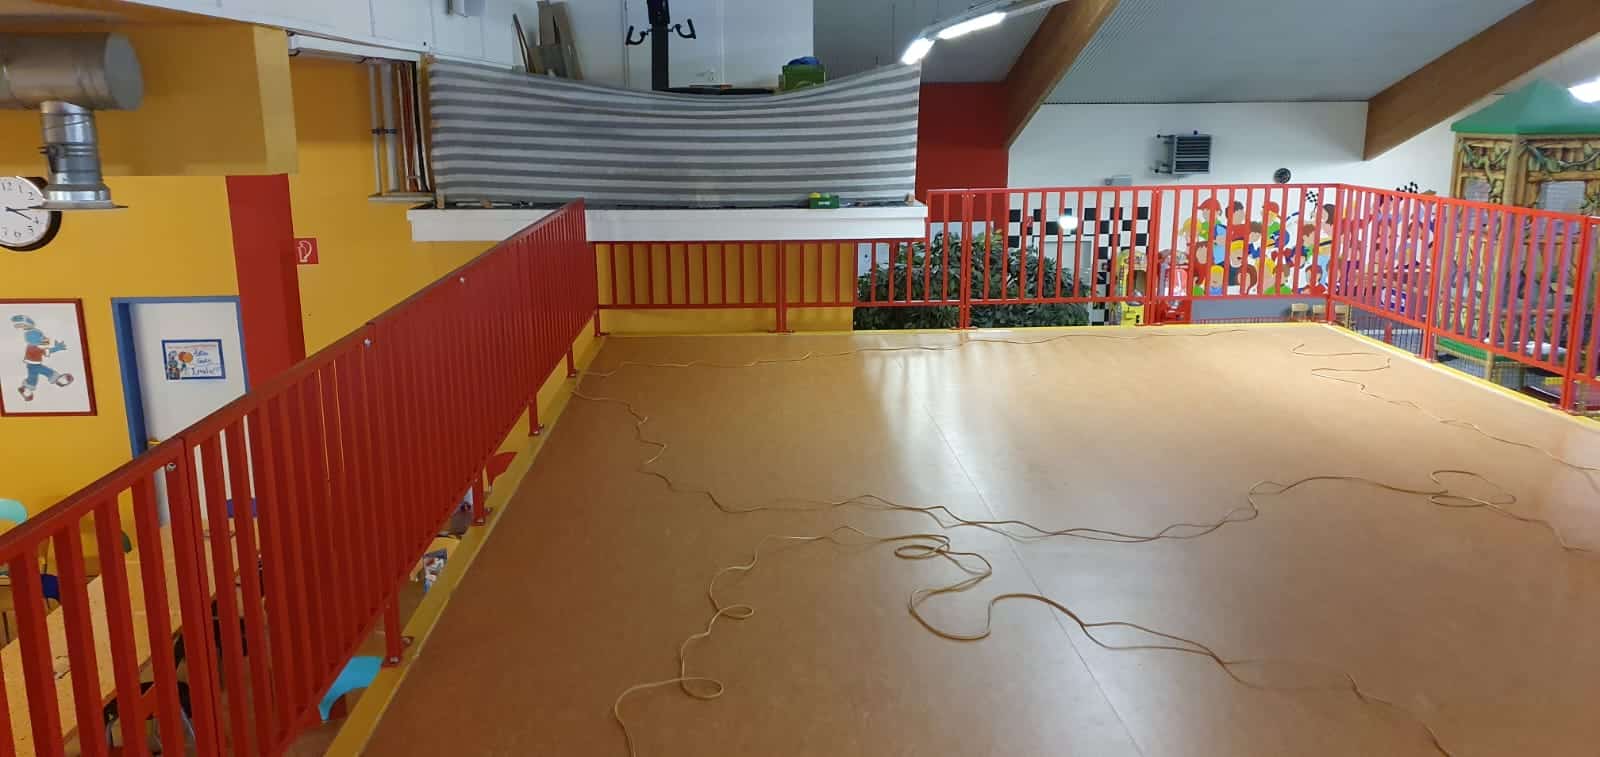 HEIKO Metallbau installiert farbenfrohe Spielpark-Empore in Soltau. Perfekt für Events und Gastronomie. Stahlbau-Exzellenz aus einer Hand.